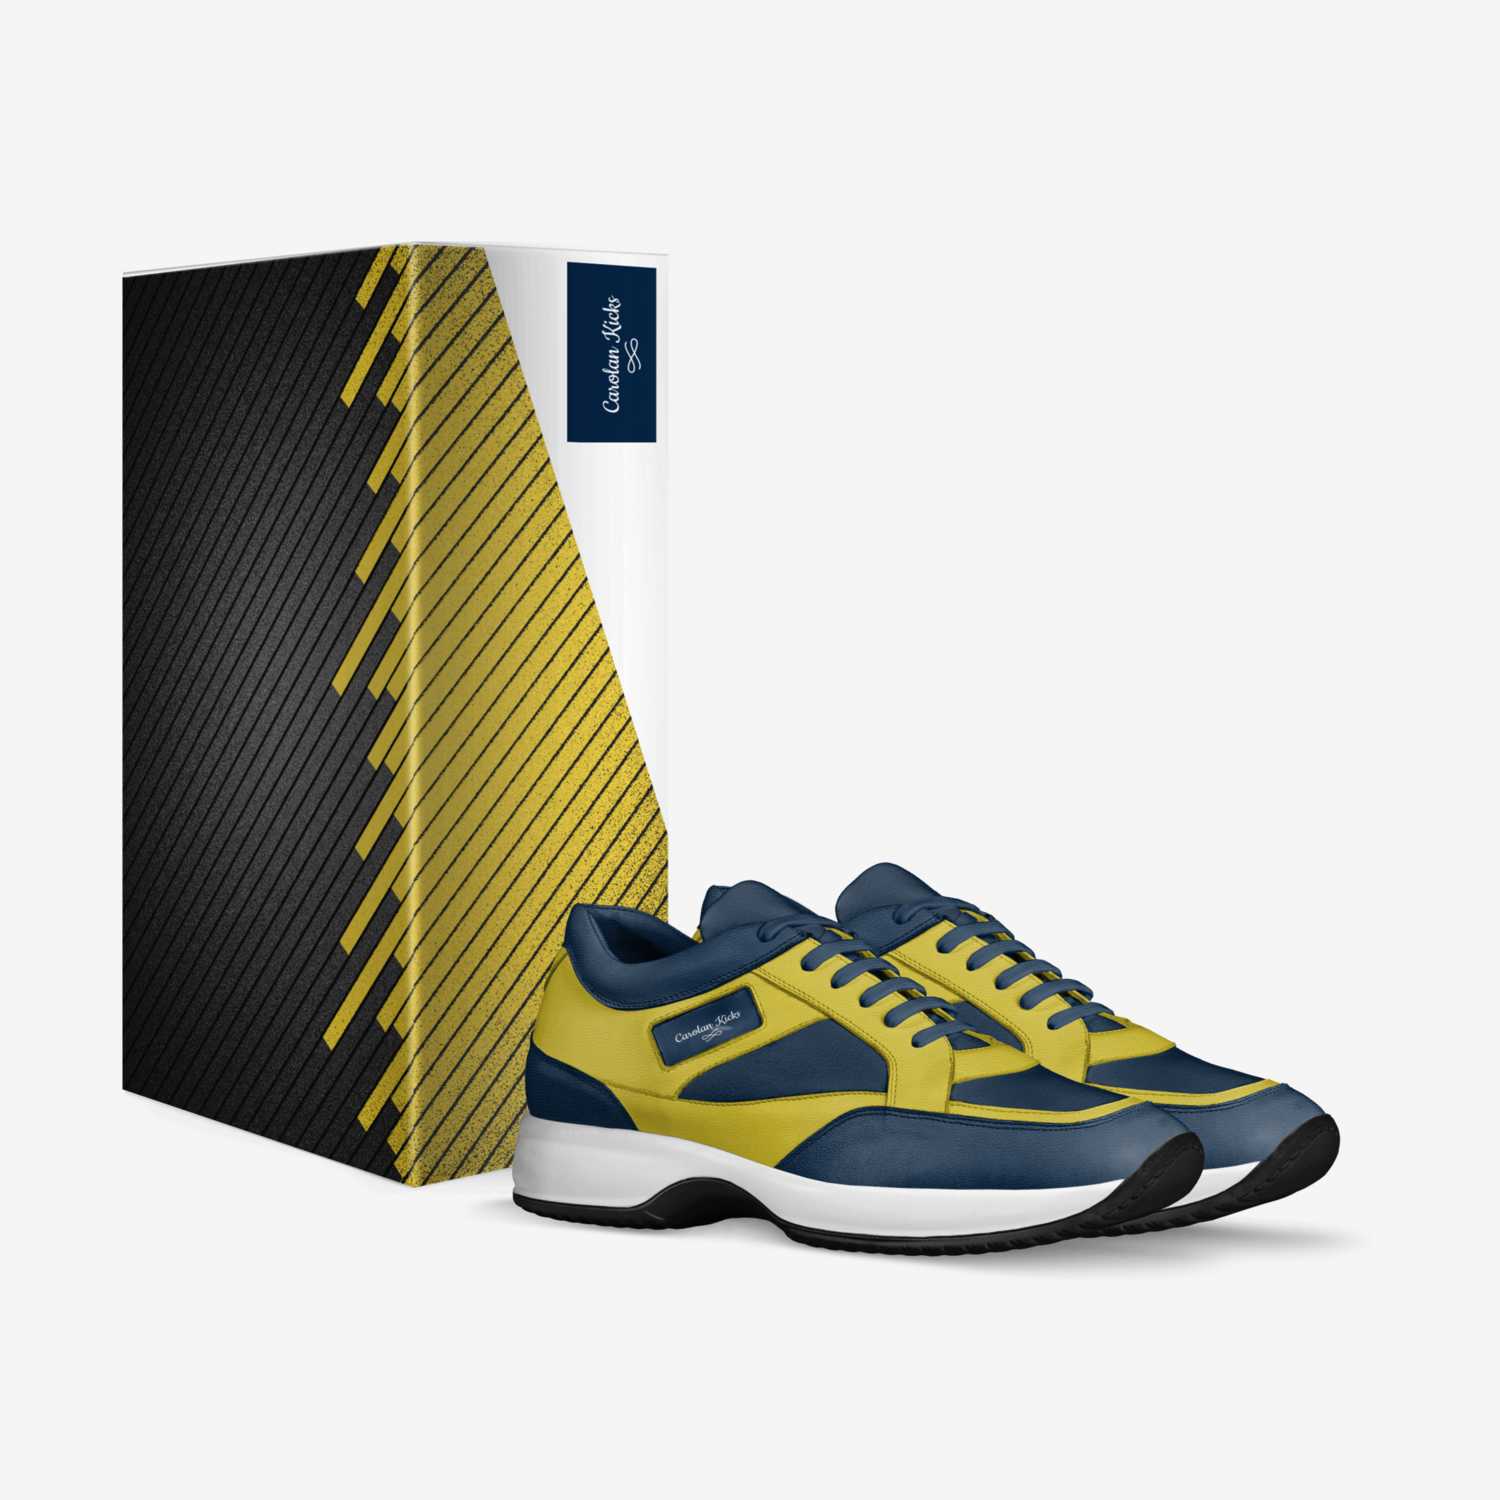 Carolan Kicks custom made in Italy shoes by Bob Ahijkskjd | Box view